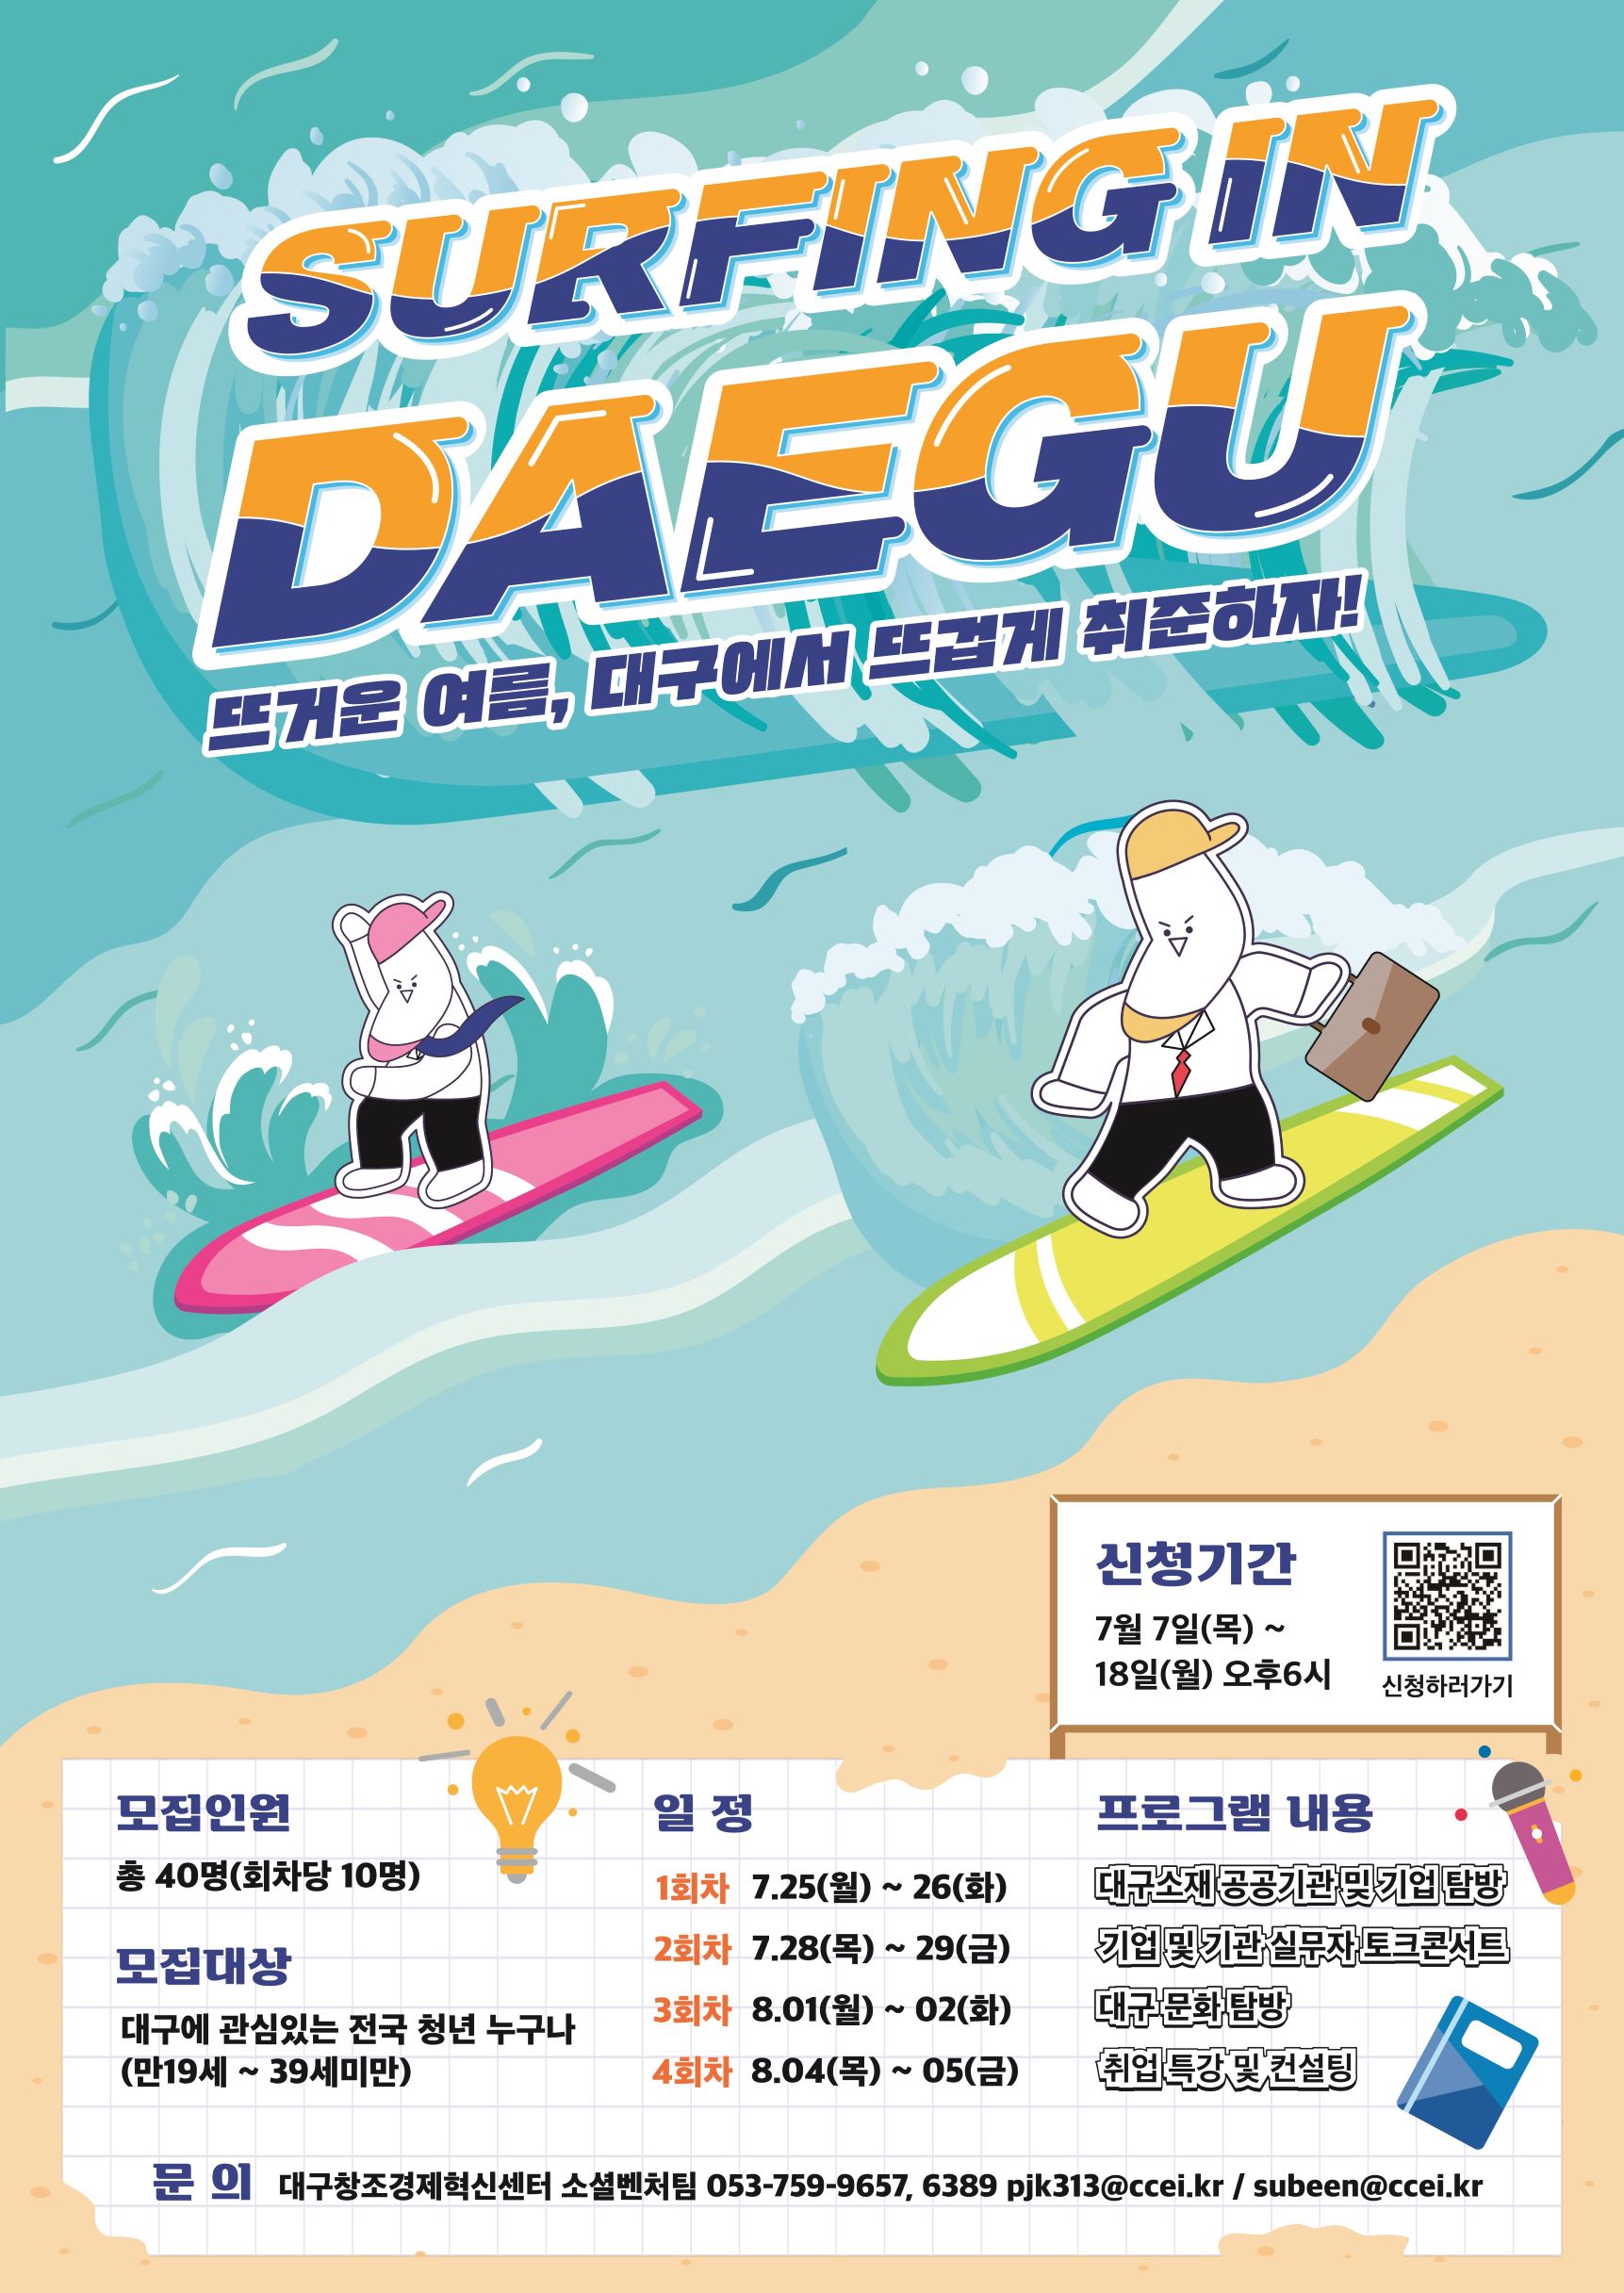 「2022 청년귀환 채널구축 사업」서핑인대구 참가자 모집